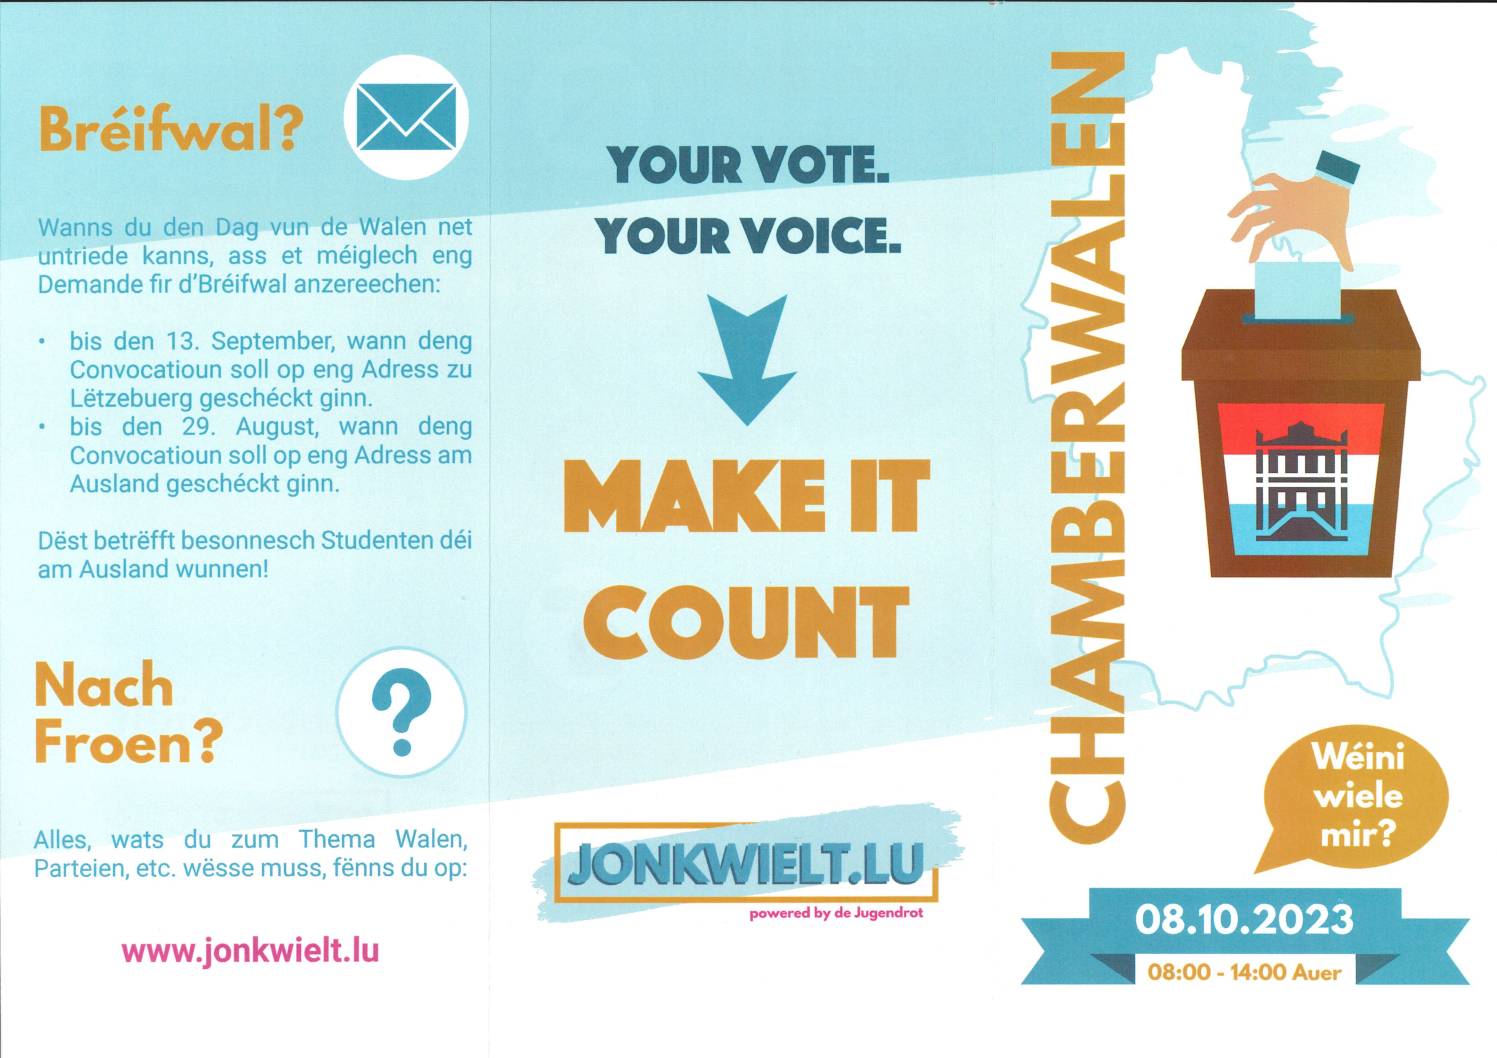 Jonkwielt.lu: élections législatives du 8 octobre 2023